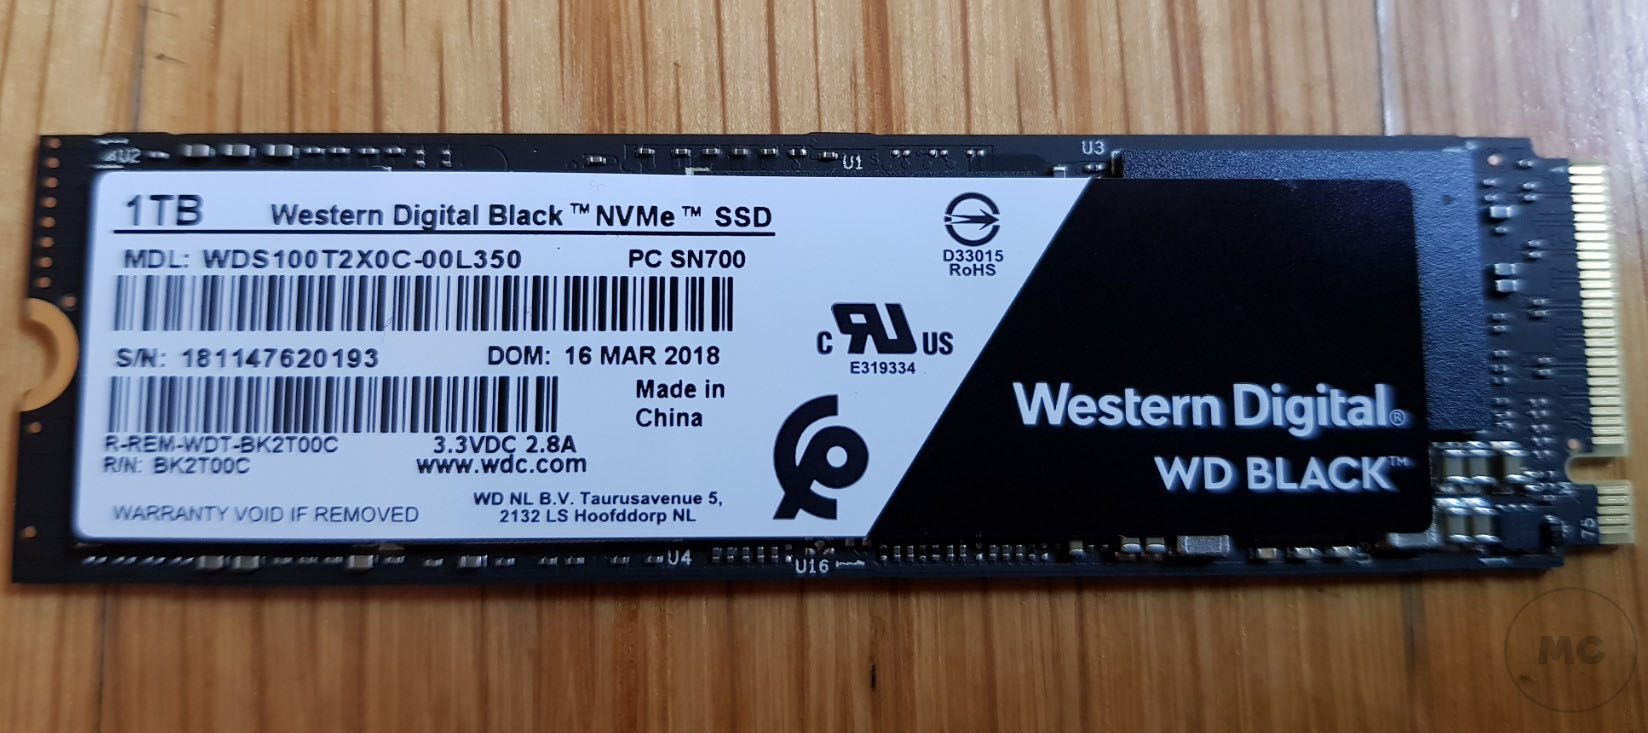 WD BLACK NVME SSD